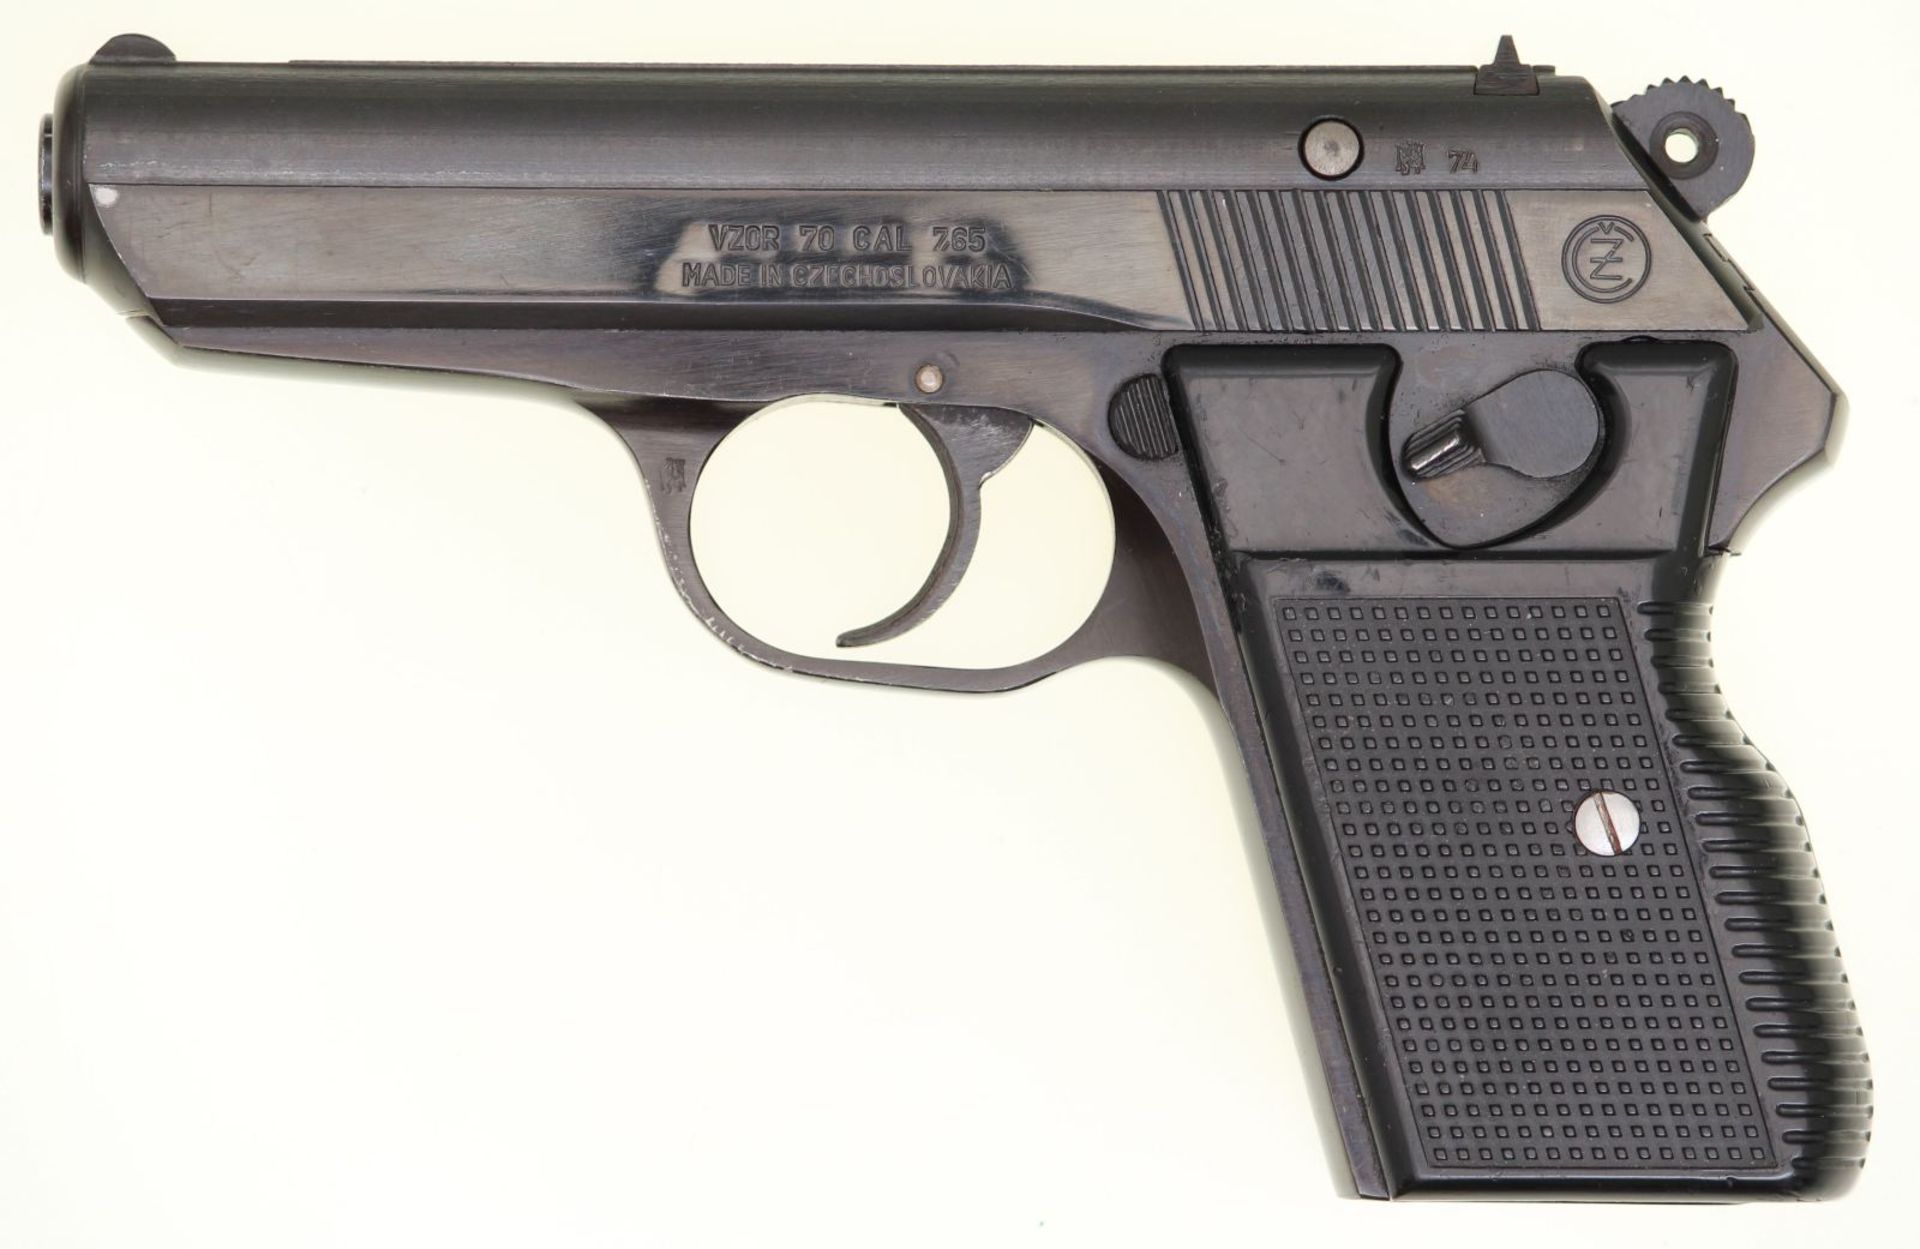 Pistole, CZ Vzor 70, Kal. 7.65mm. Brünierte Ganzstahlwaffe mit DA-Abzug. Kimme seitlich